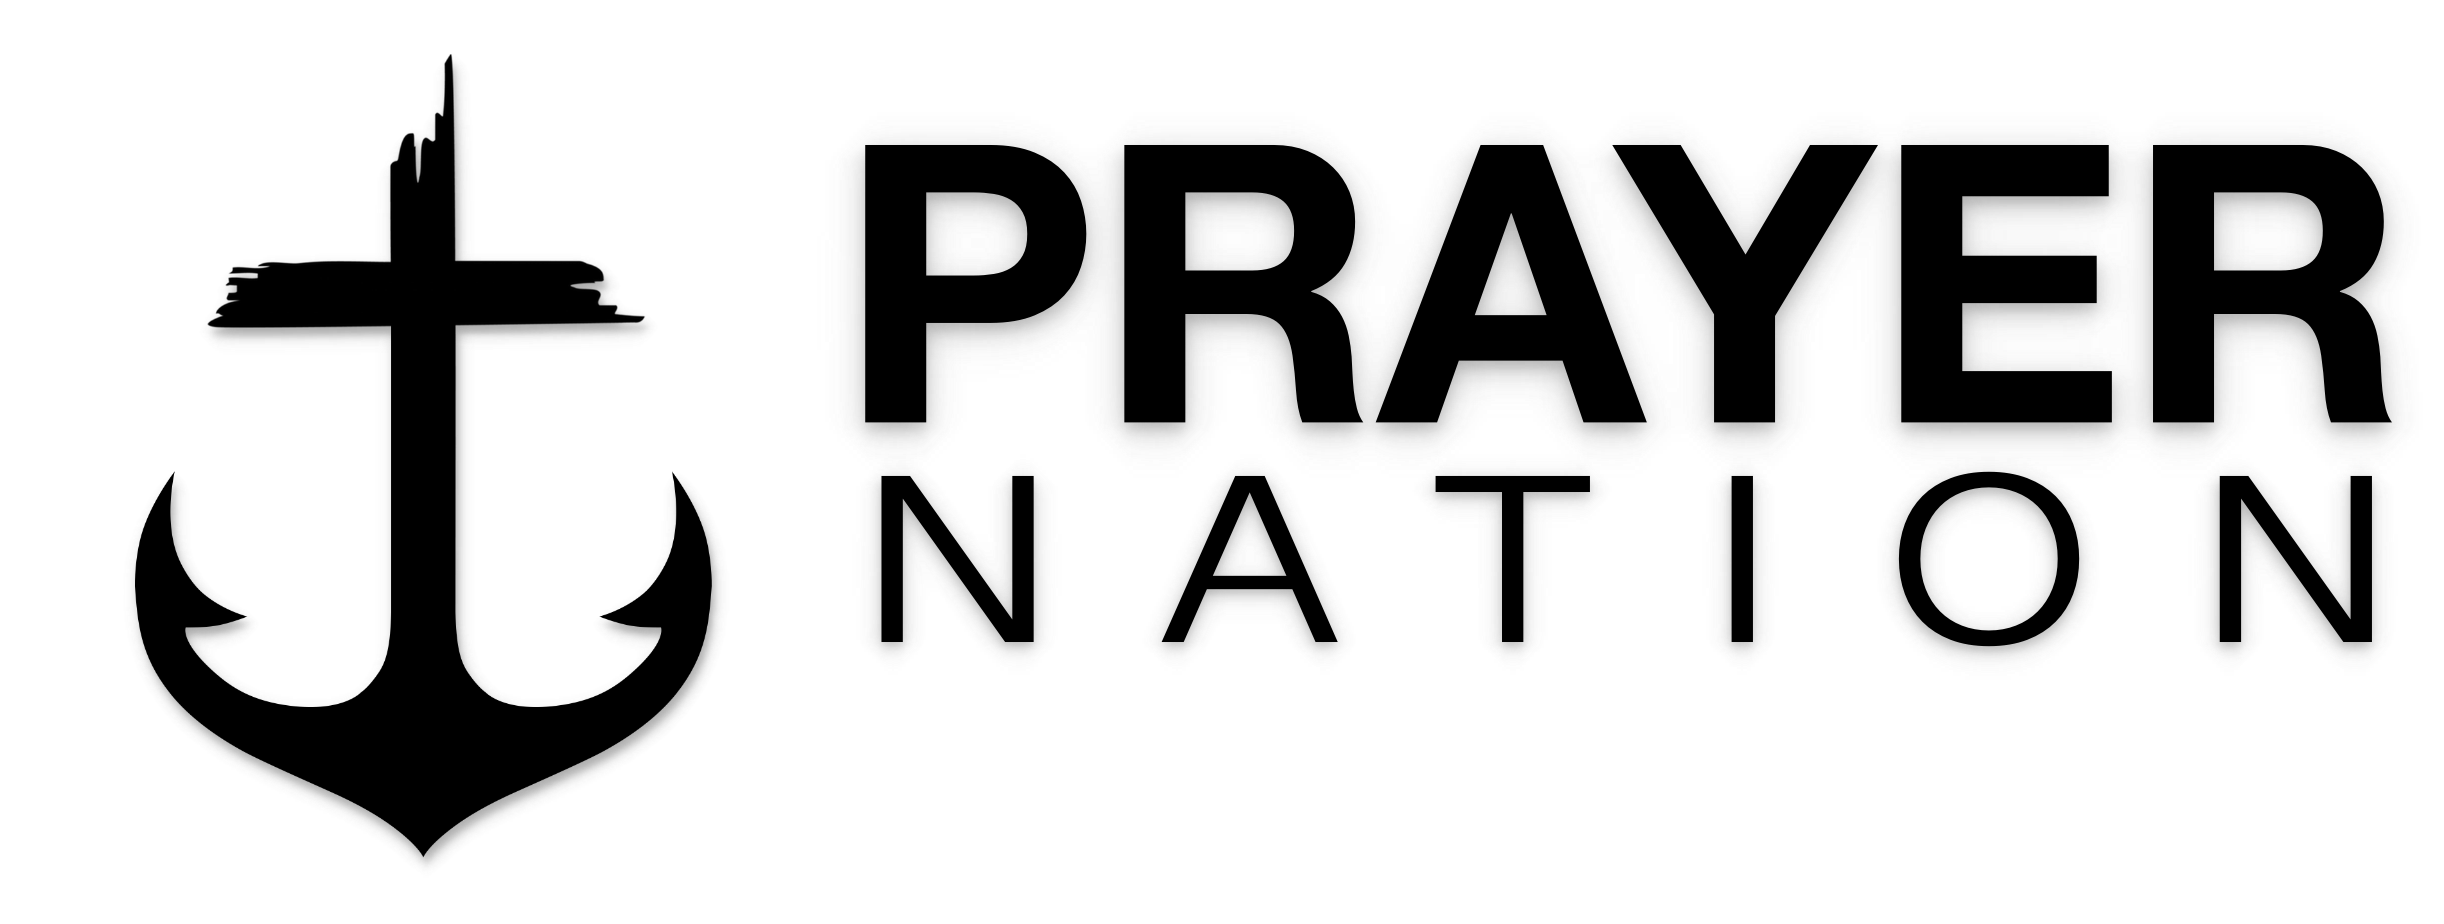 PRAYER NATION Logo